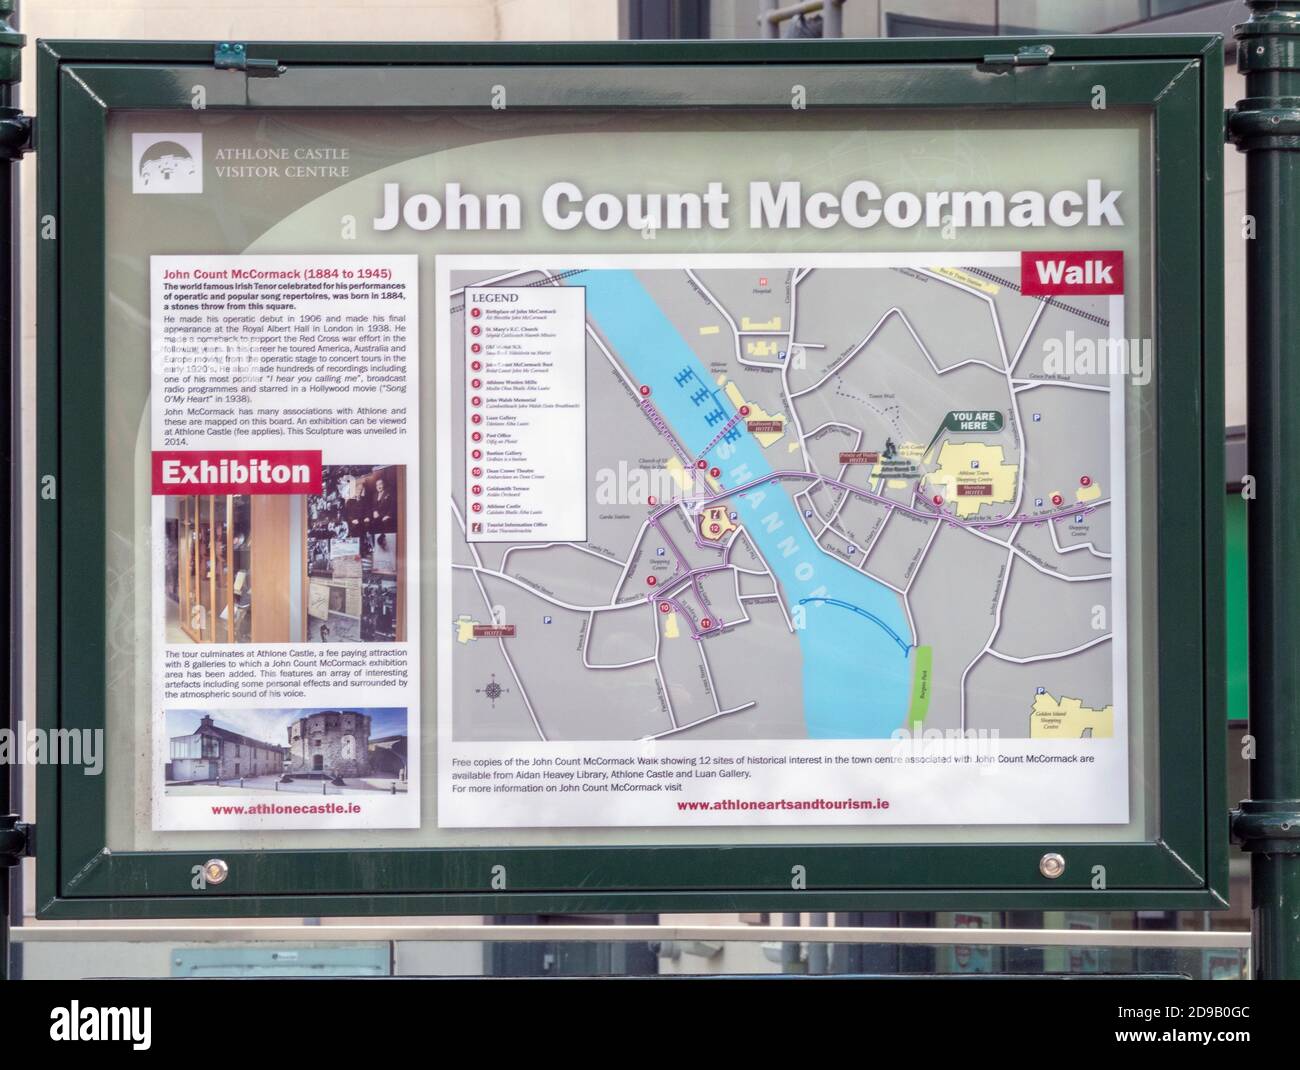 Tablero de información pública para turistas en la ciudad de Athlone, Co Westmeath Irlanda sobre John Count McCormack. Foto de stock